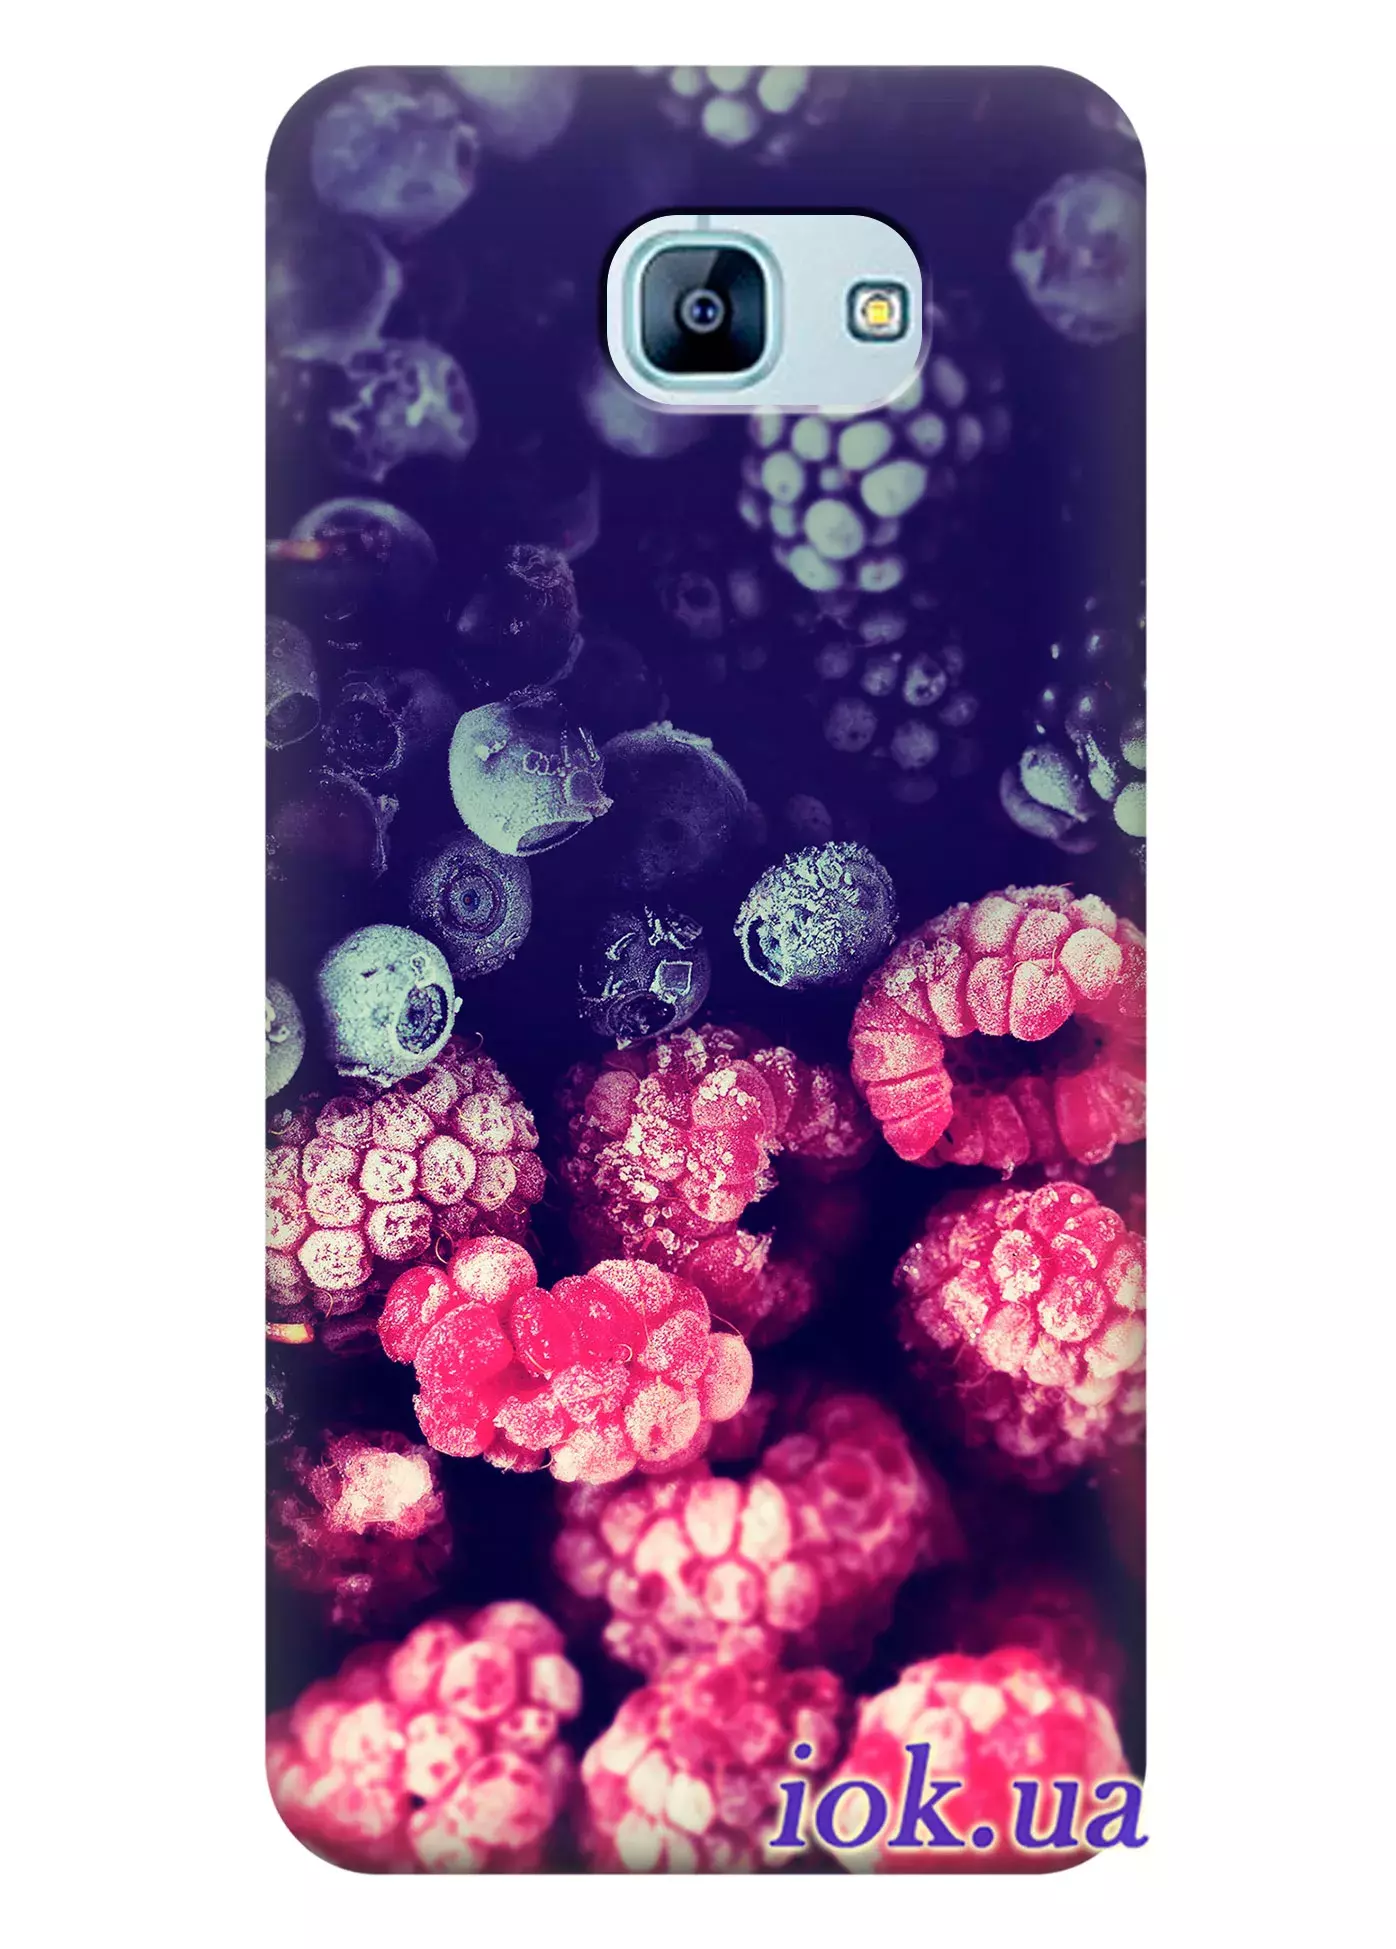 Чехол для Galaxy A8 2016 - Лесные ягоды